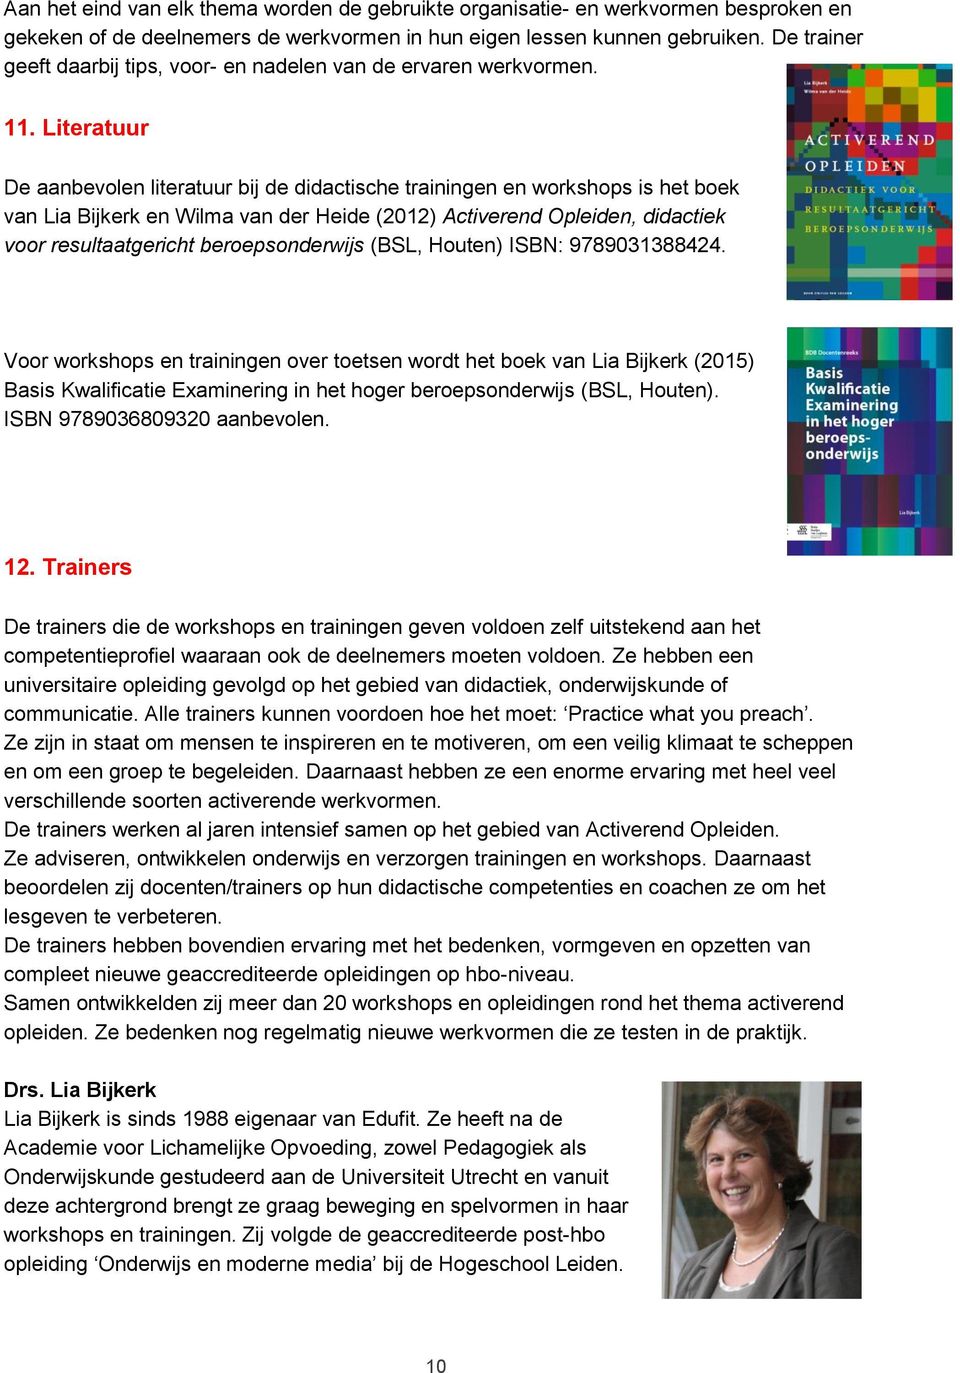 Literatuur De aanbevolen literatuur bij de didactische trainingen en workshops is het boek van Lia Bijkerk en Wilma van der Heide (2012) Activerend Opleiden, didactiek voor resultaatgericht